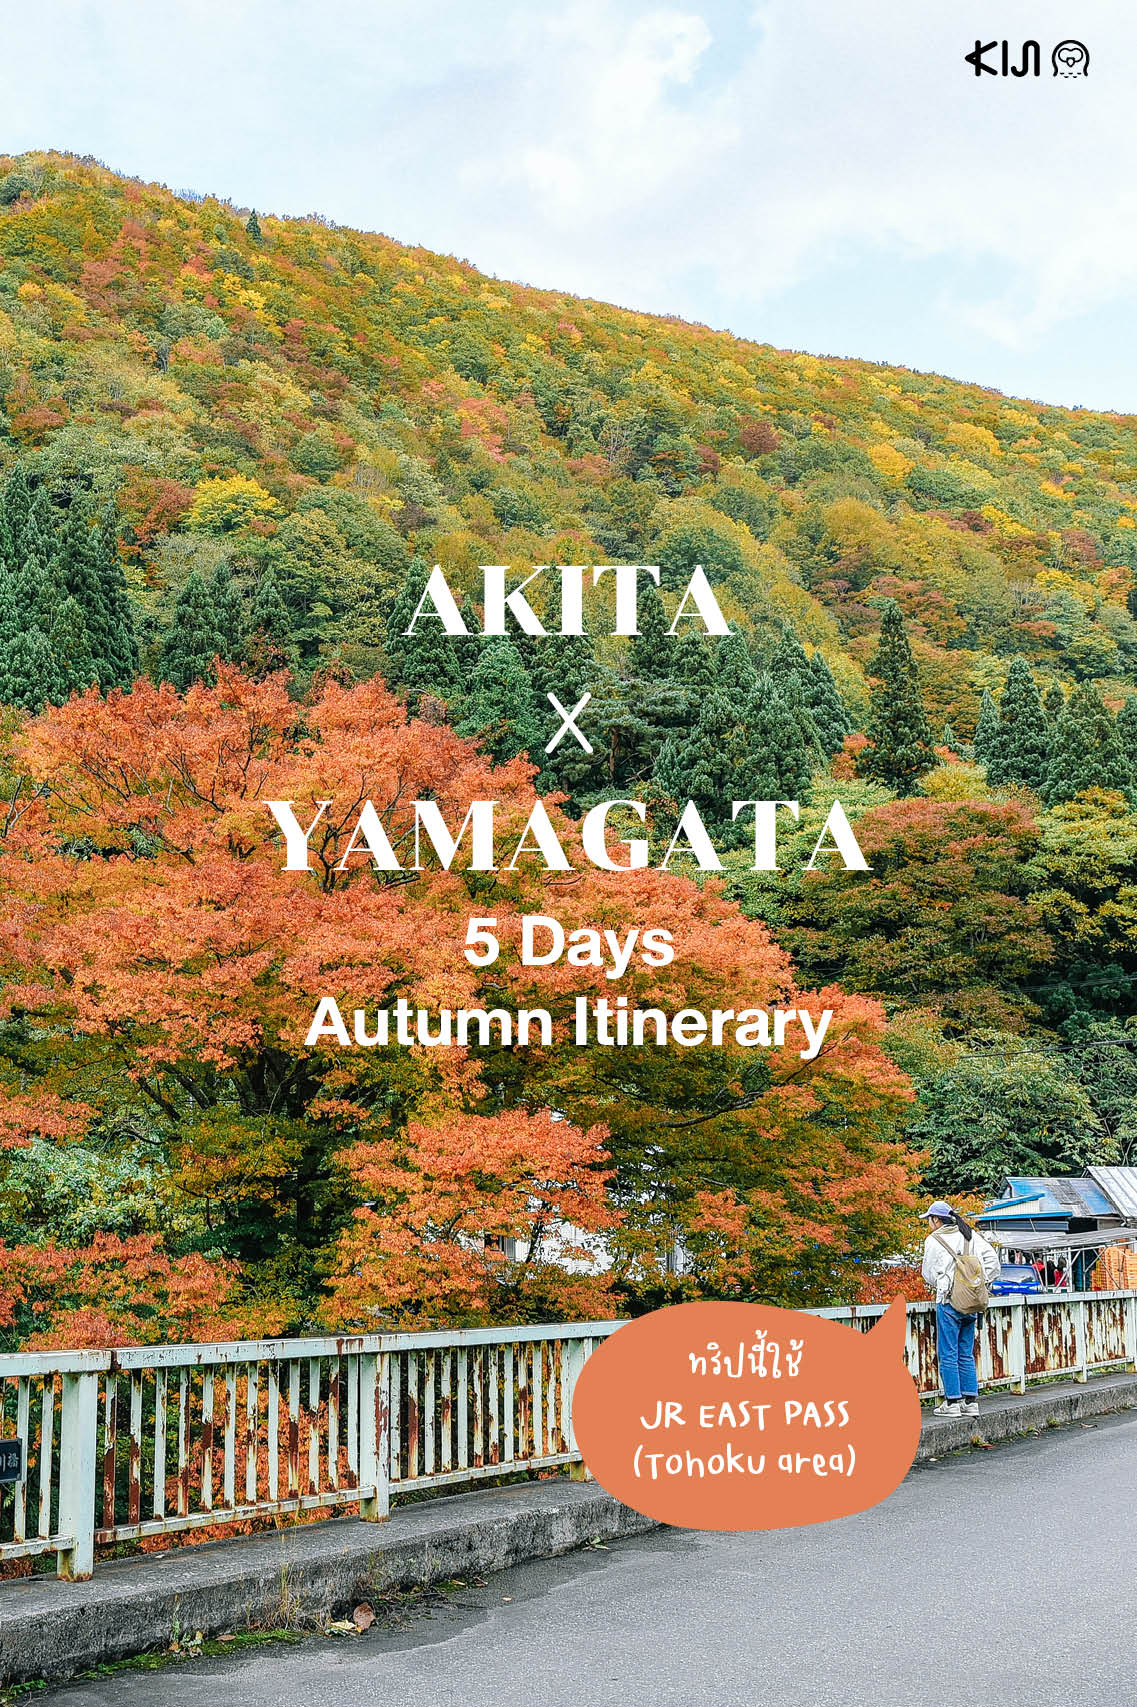 ทริปเที่ยว ‘อาคิตะ’ ‘ยามากาตะ’ 5 วัน ฤดูใบไม้ร่วง ด้วยบัตร JR EAST PASS (Tohoku area) 